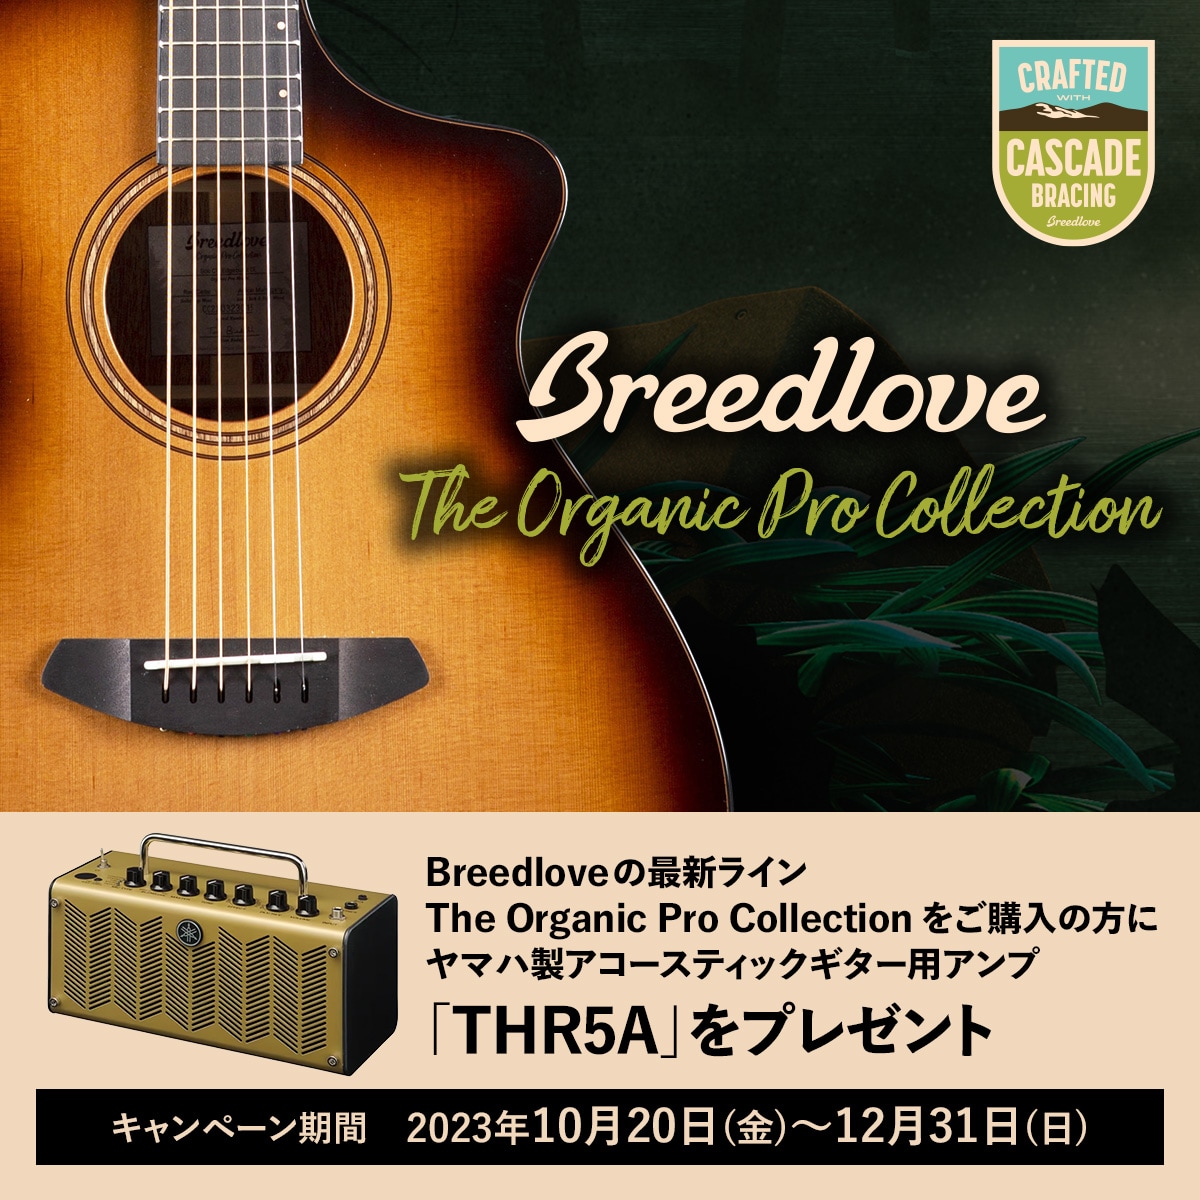 ヤマハ | The Organic Pro Collection購入者対象 アコースティック